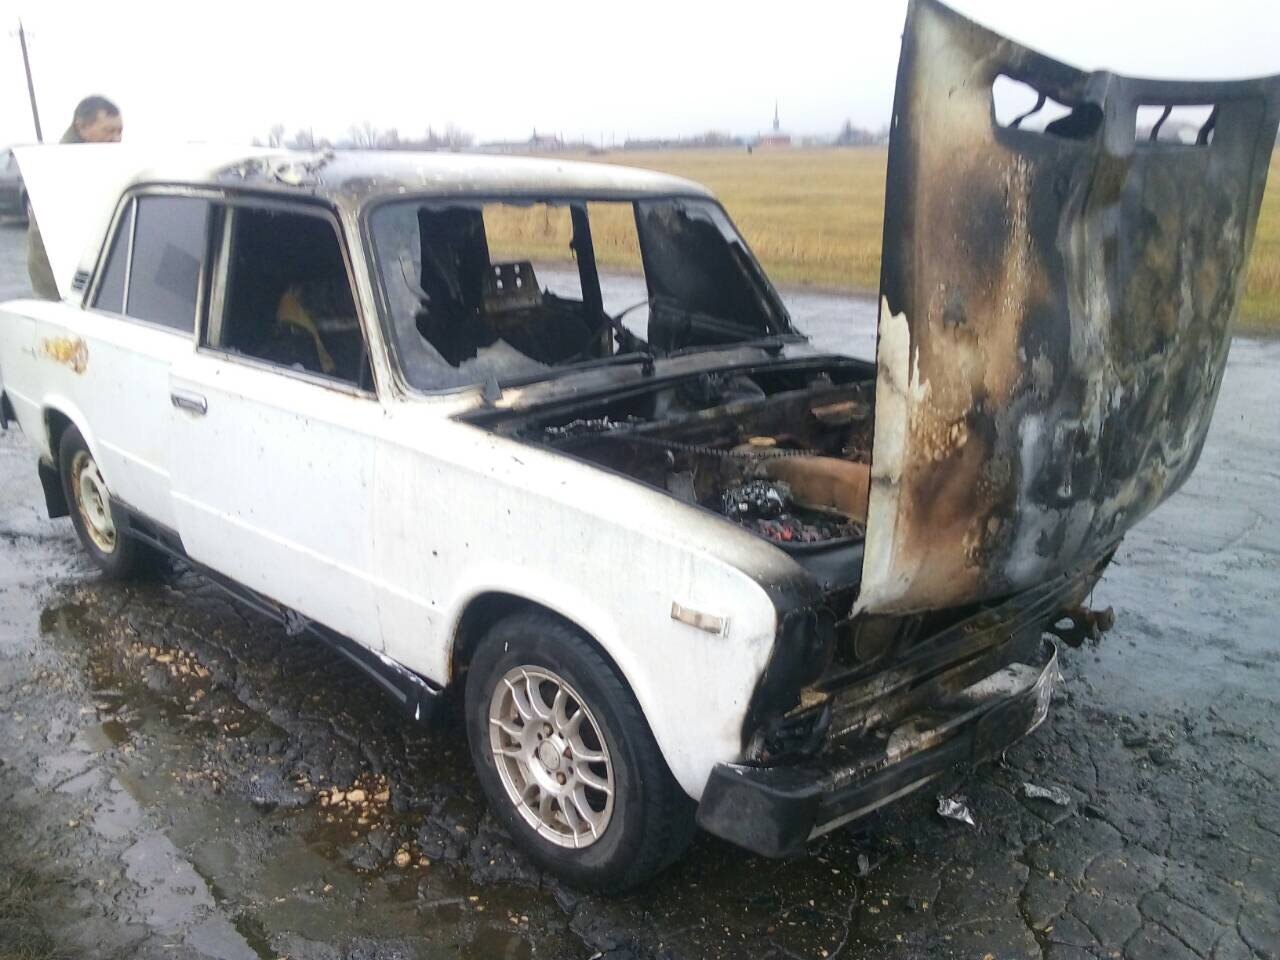 В Мордовии на выходных загорелись два автомобиля